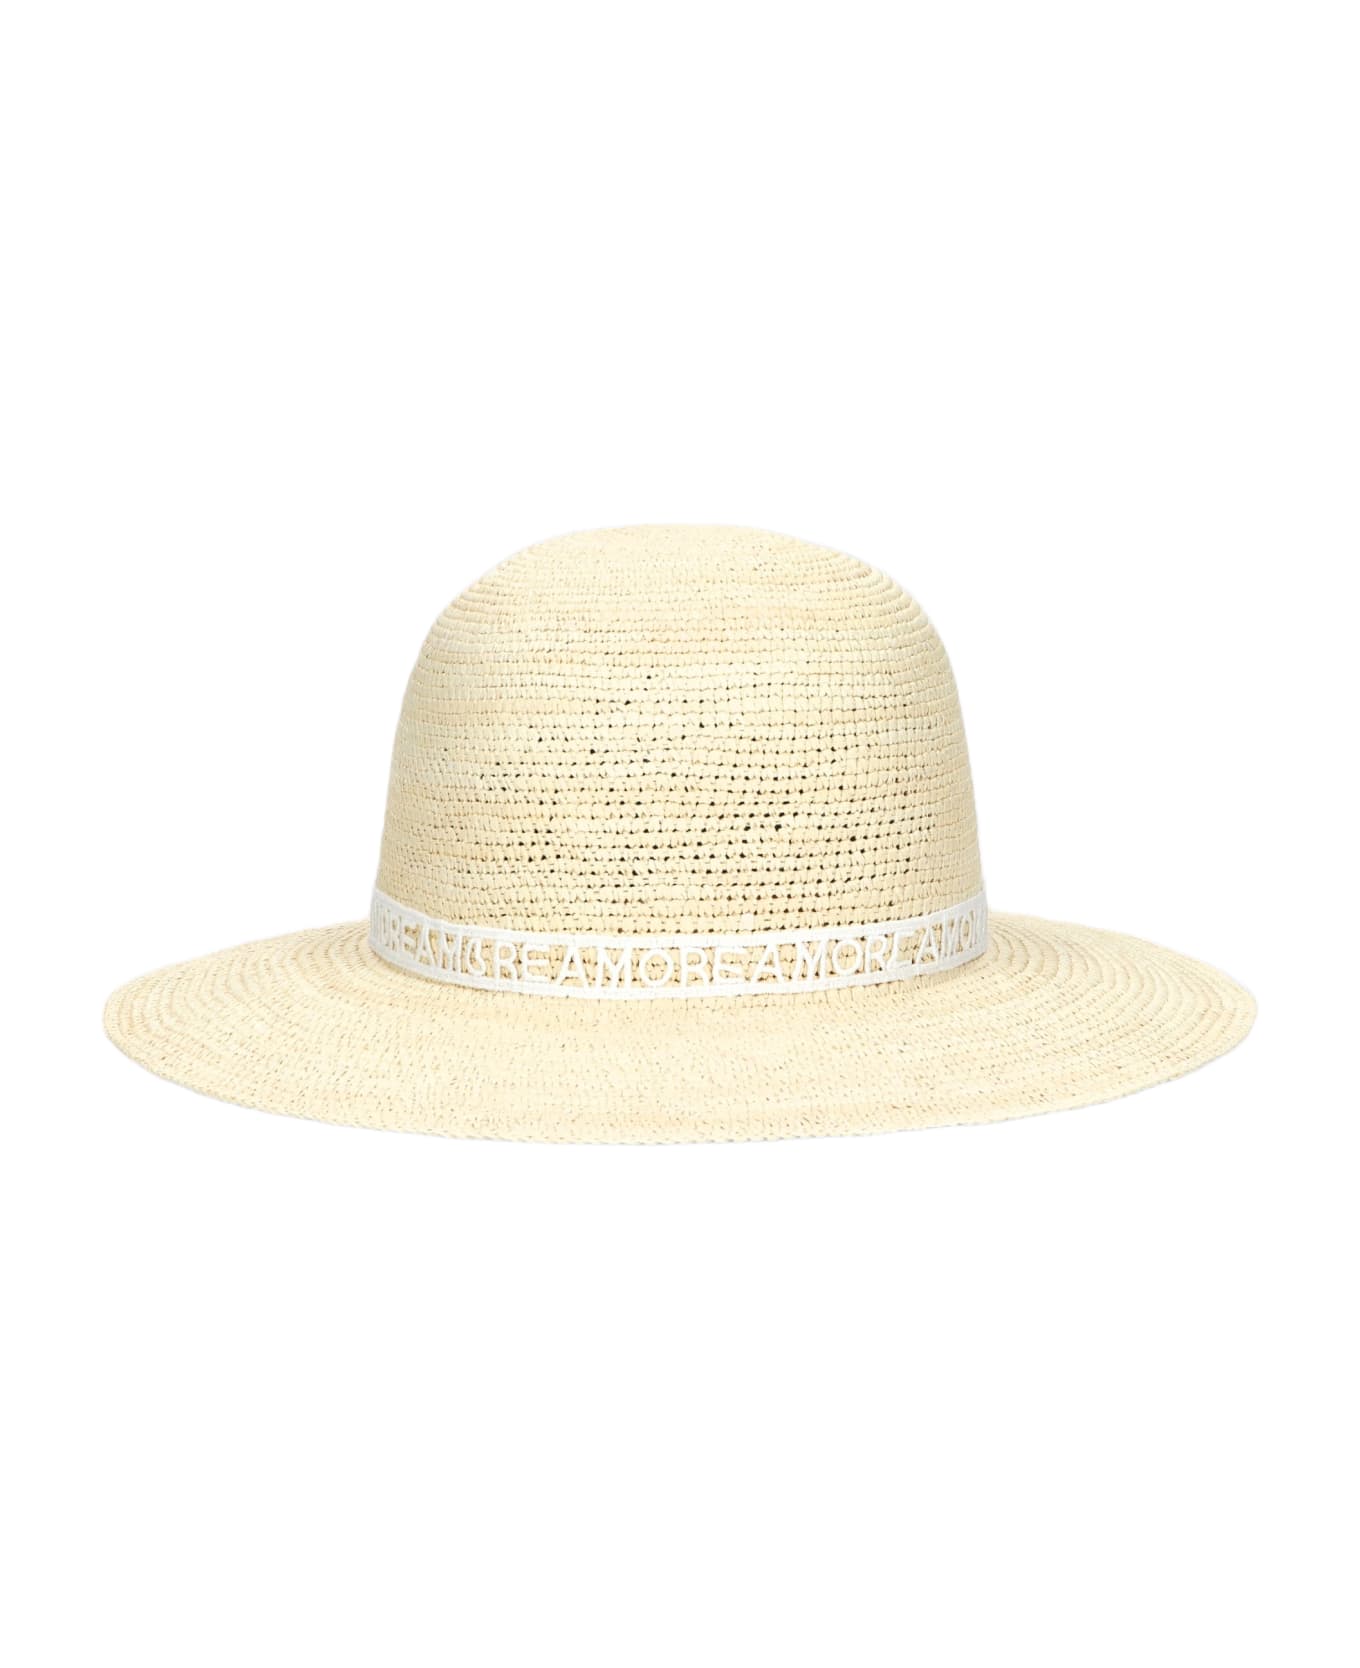 Borsalino Violet Panama Crochet - NATURAL, PATTERNED WHITE HAT BAND 帽子